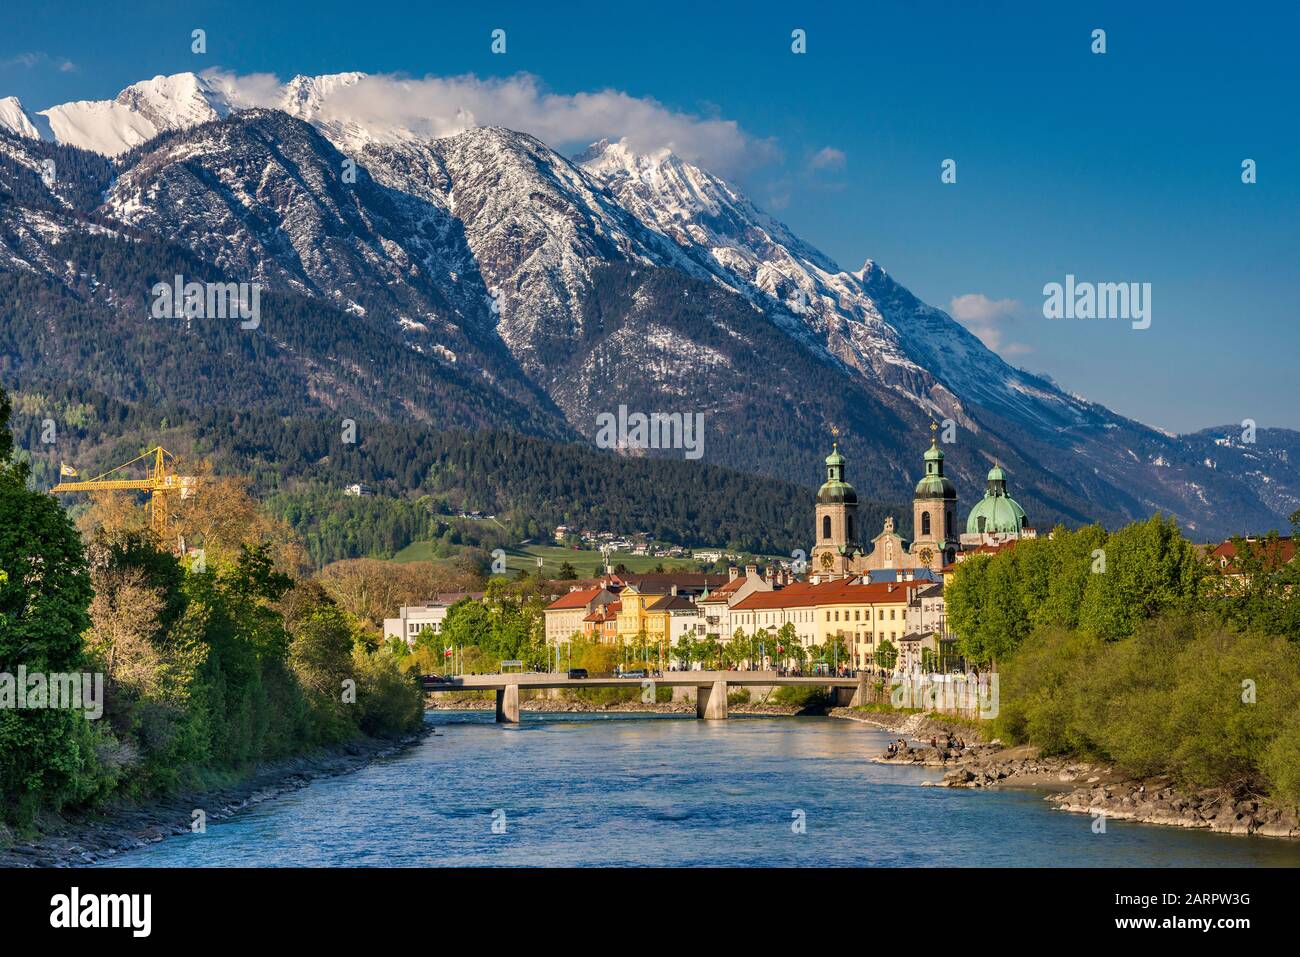 Vue sur le centre d'Innsbruck depuis le pont au-dessus de la rivière Inn, le massif de la Nordkette, qui fait partie du groupe Karwendel, à distance, Innsbruck, Tyrol, Autriche Banque D'Images